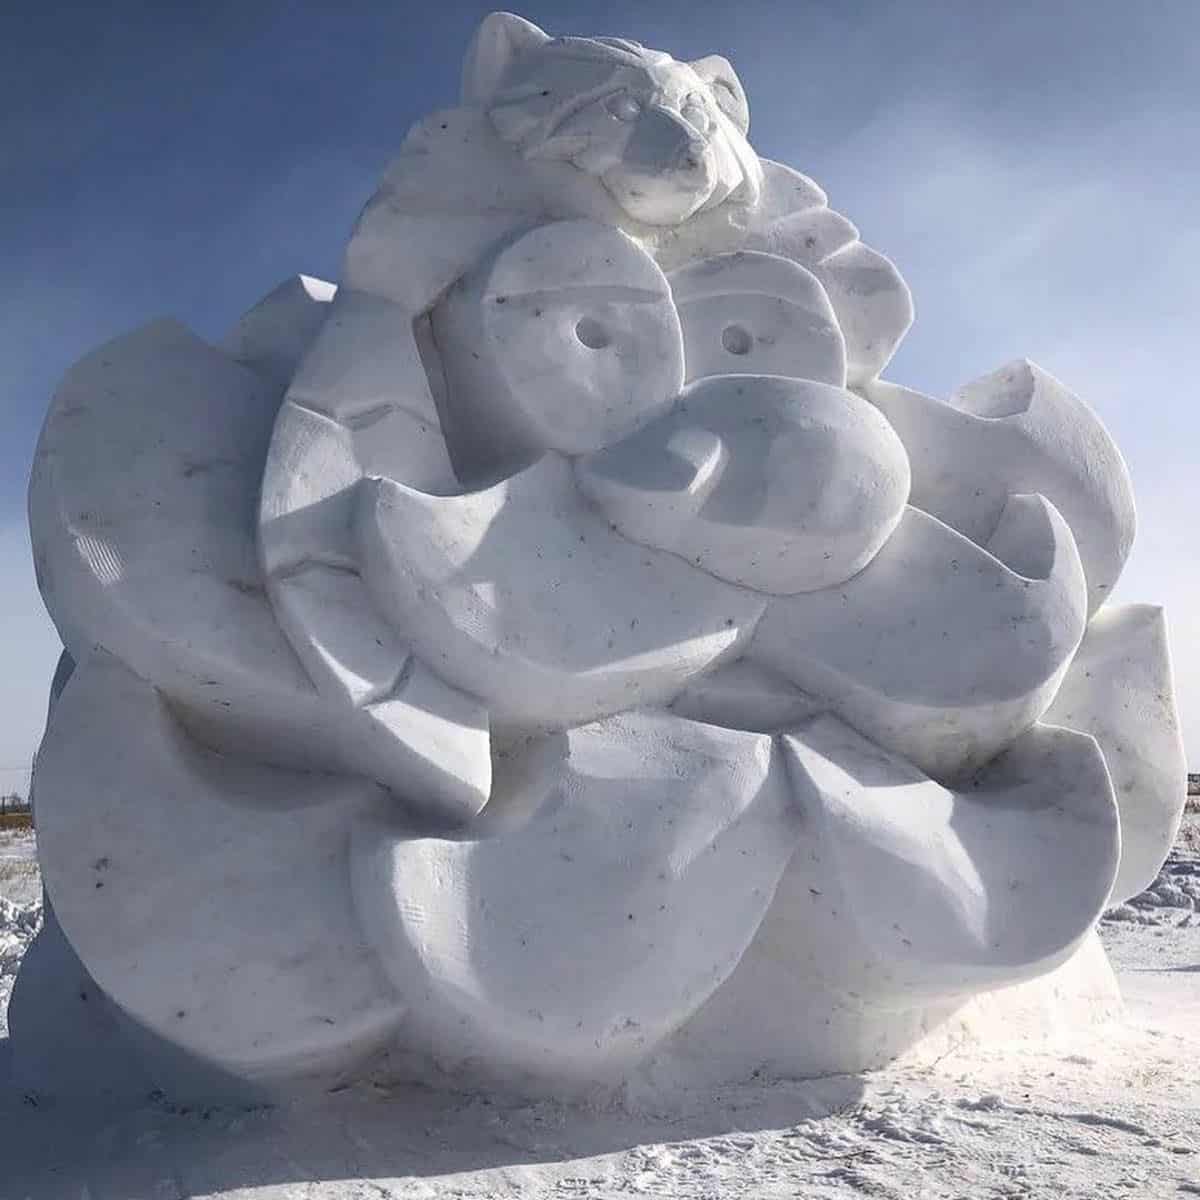 Giant Snow Sculpture